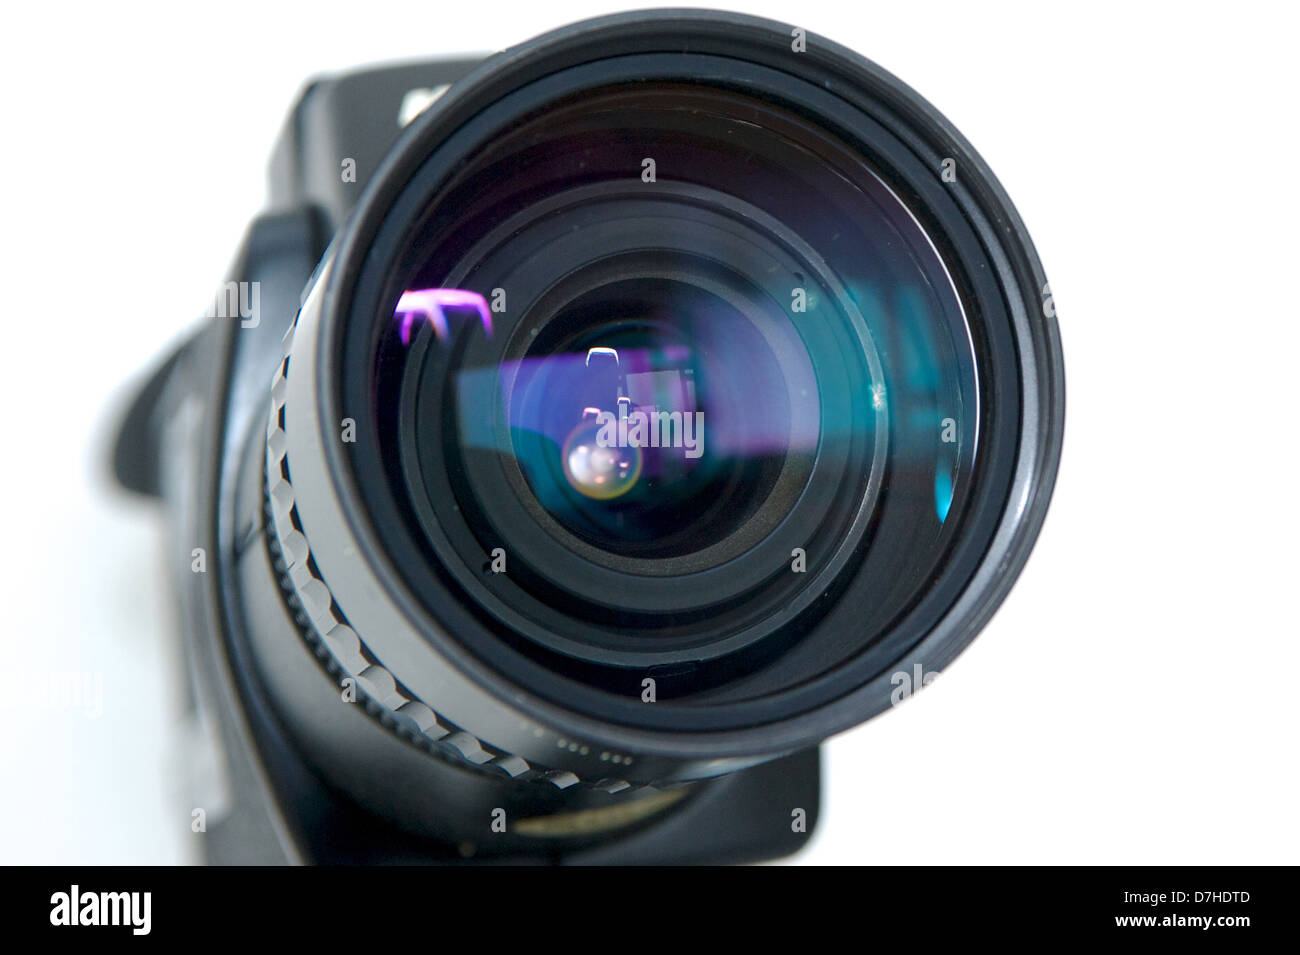 Objectif ciné sur une R10 appareil photo Nikon Super Banque D'Images